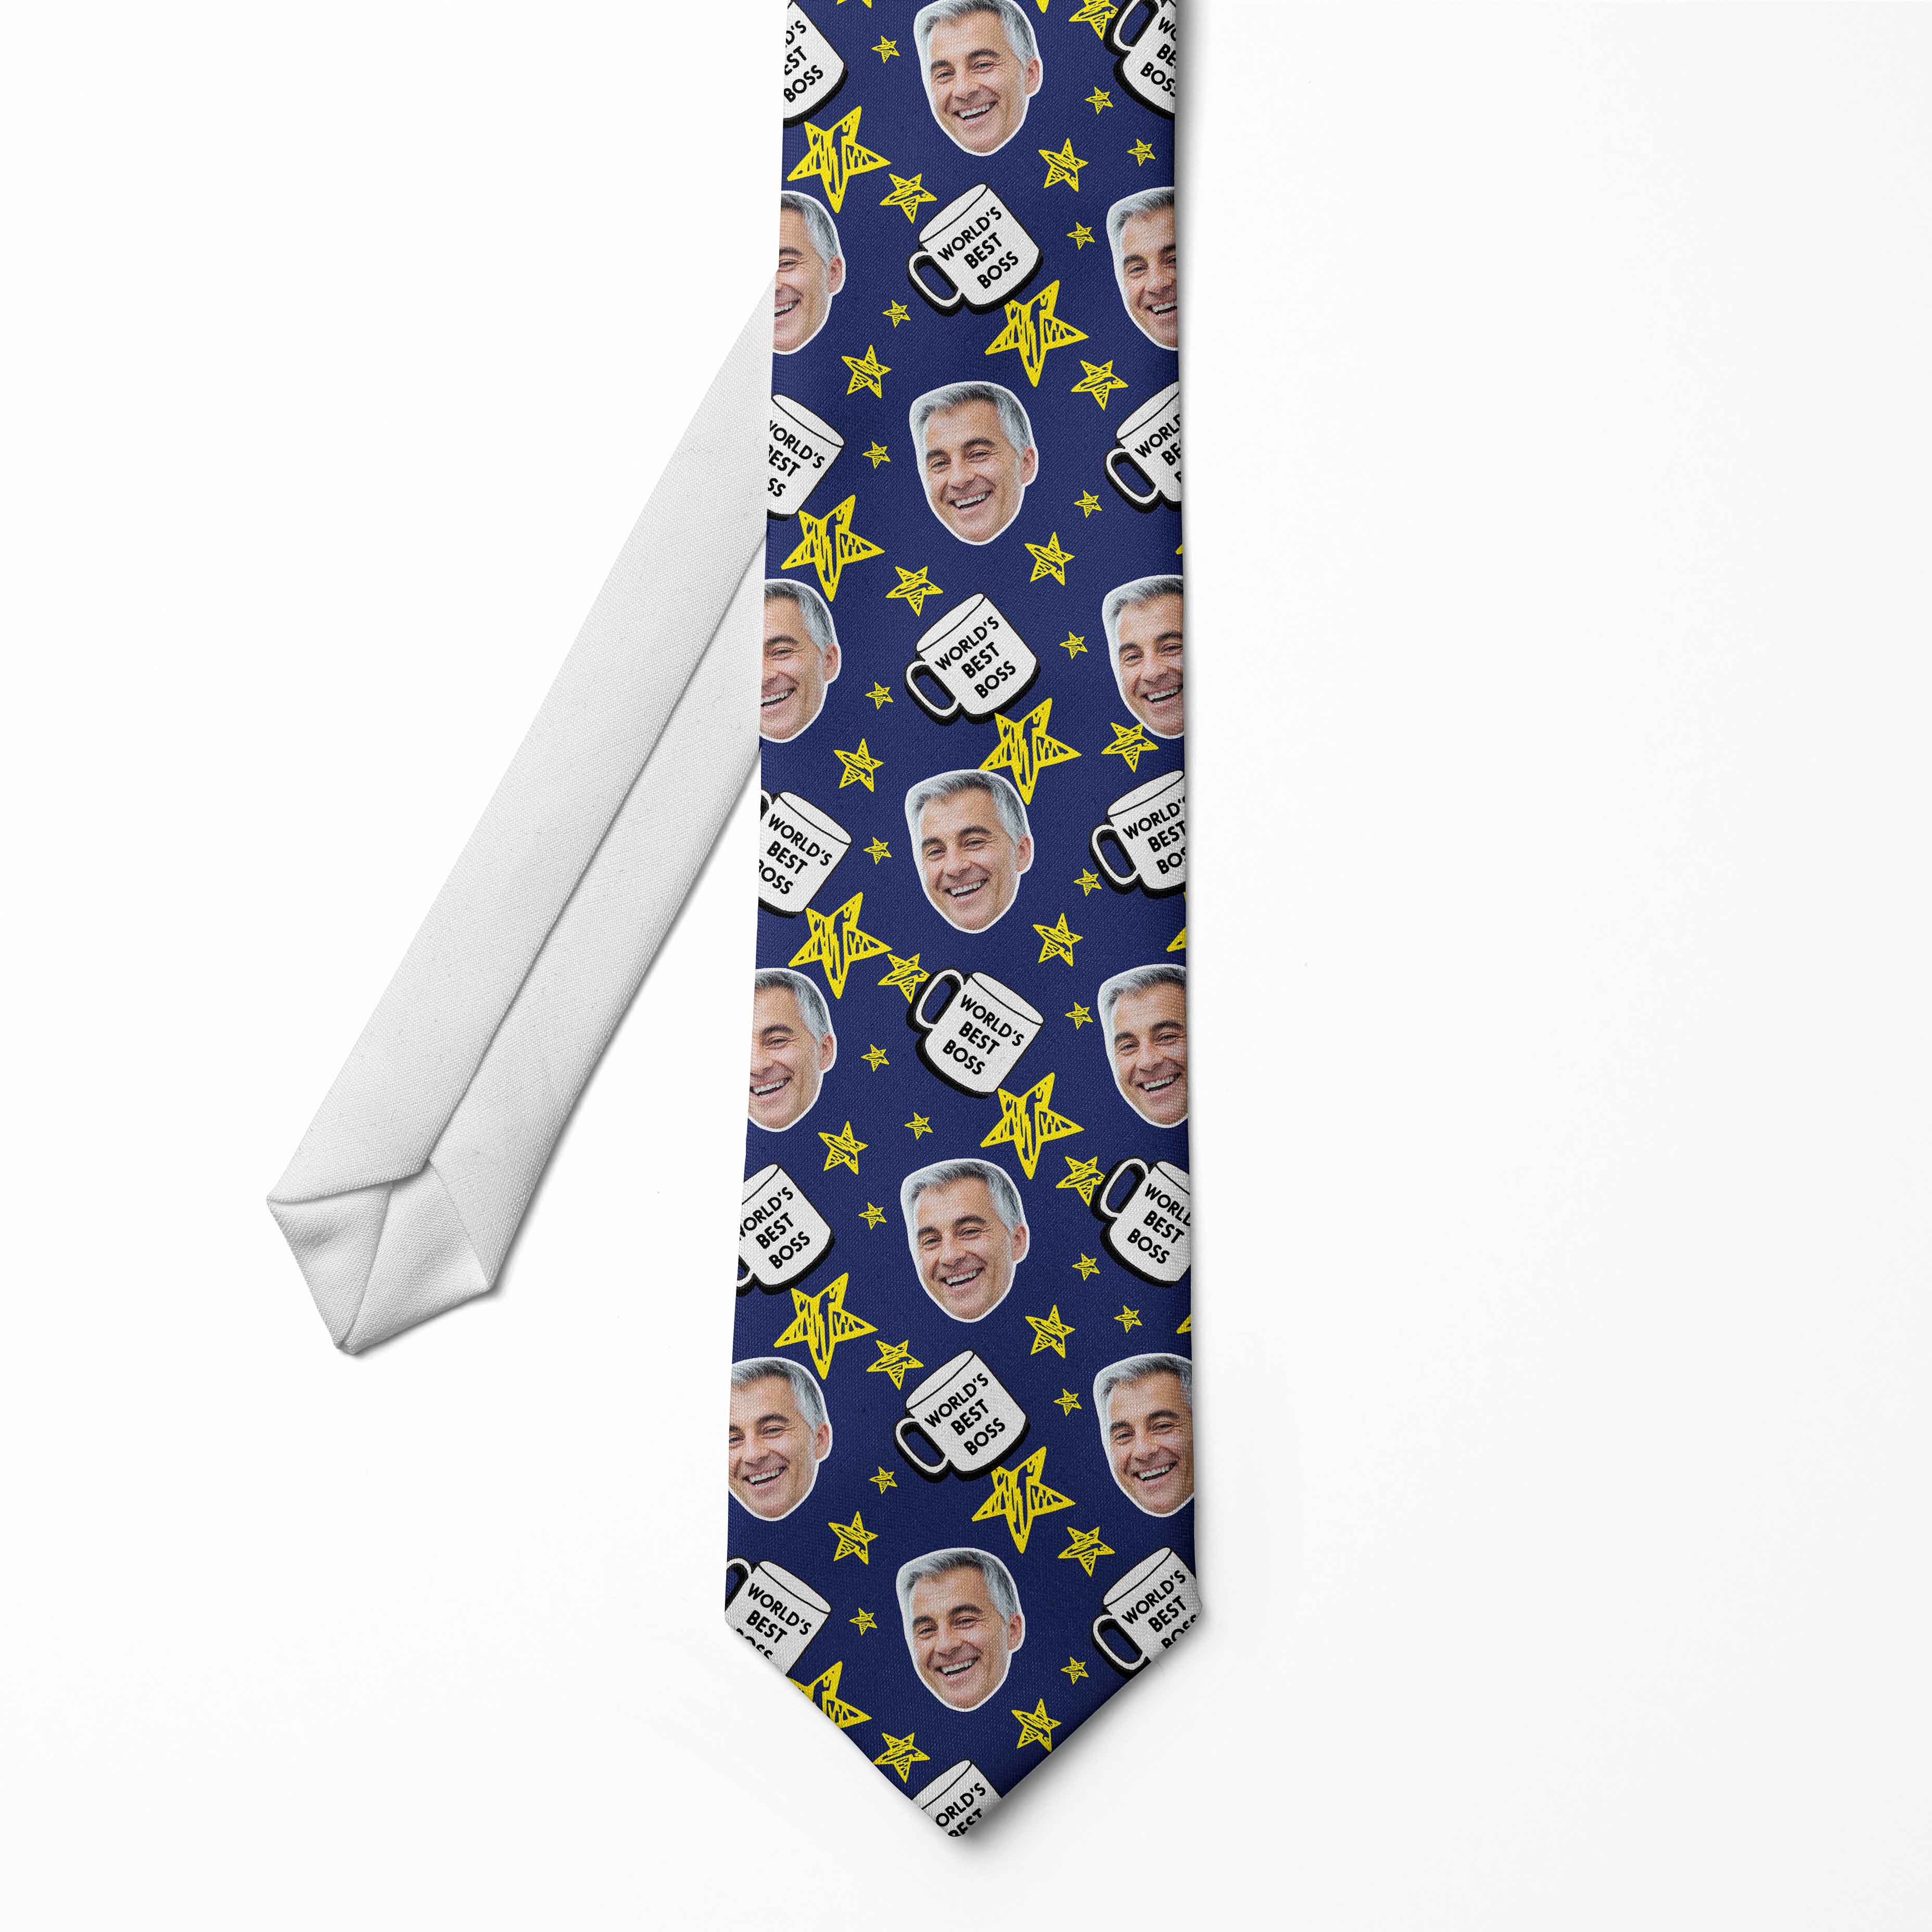 World's Best Boss Tie